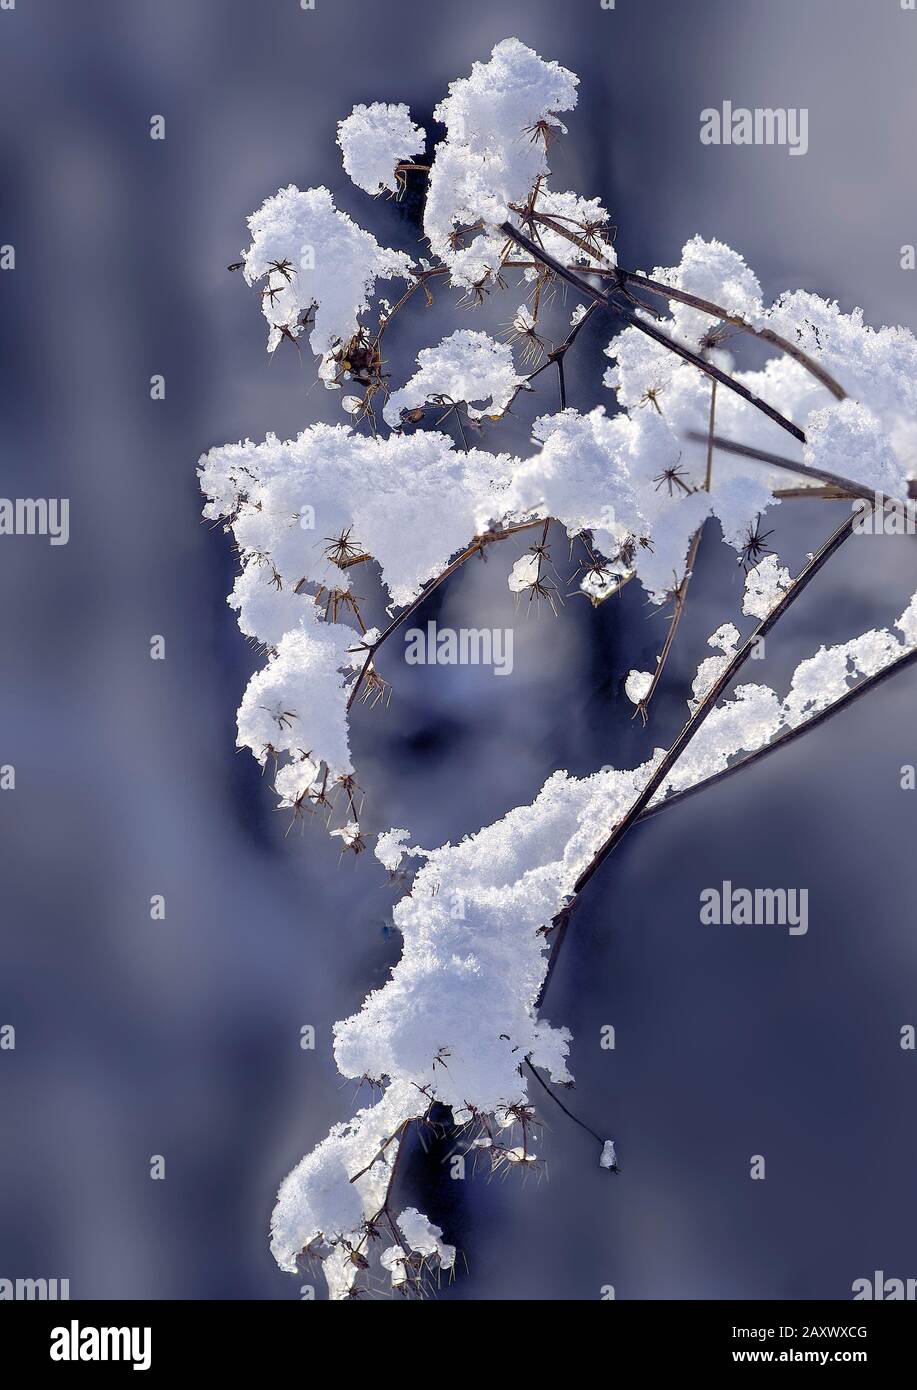 Branche sèche de la plante dans la forêt d'hiver avec de la neige moelleuse couverte après la chute de neige gros plan sur fond flou. Magnifique détail de la nature hivernale, gelée Banque D'Images